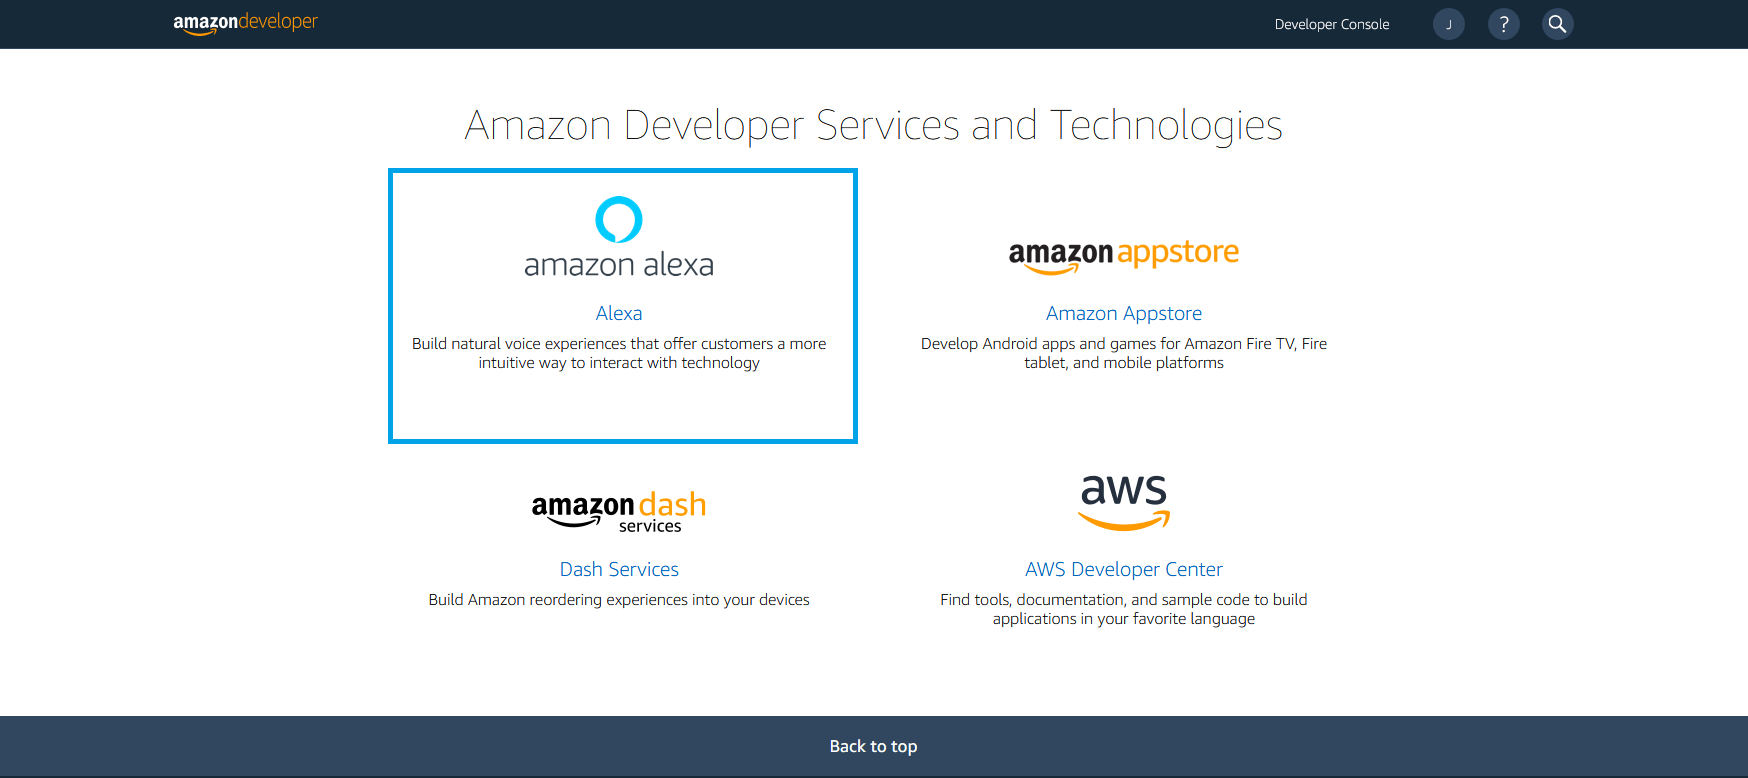 Consola de desarrollo de Amazon: descripción general del servicio